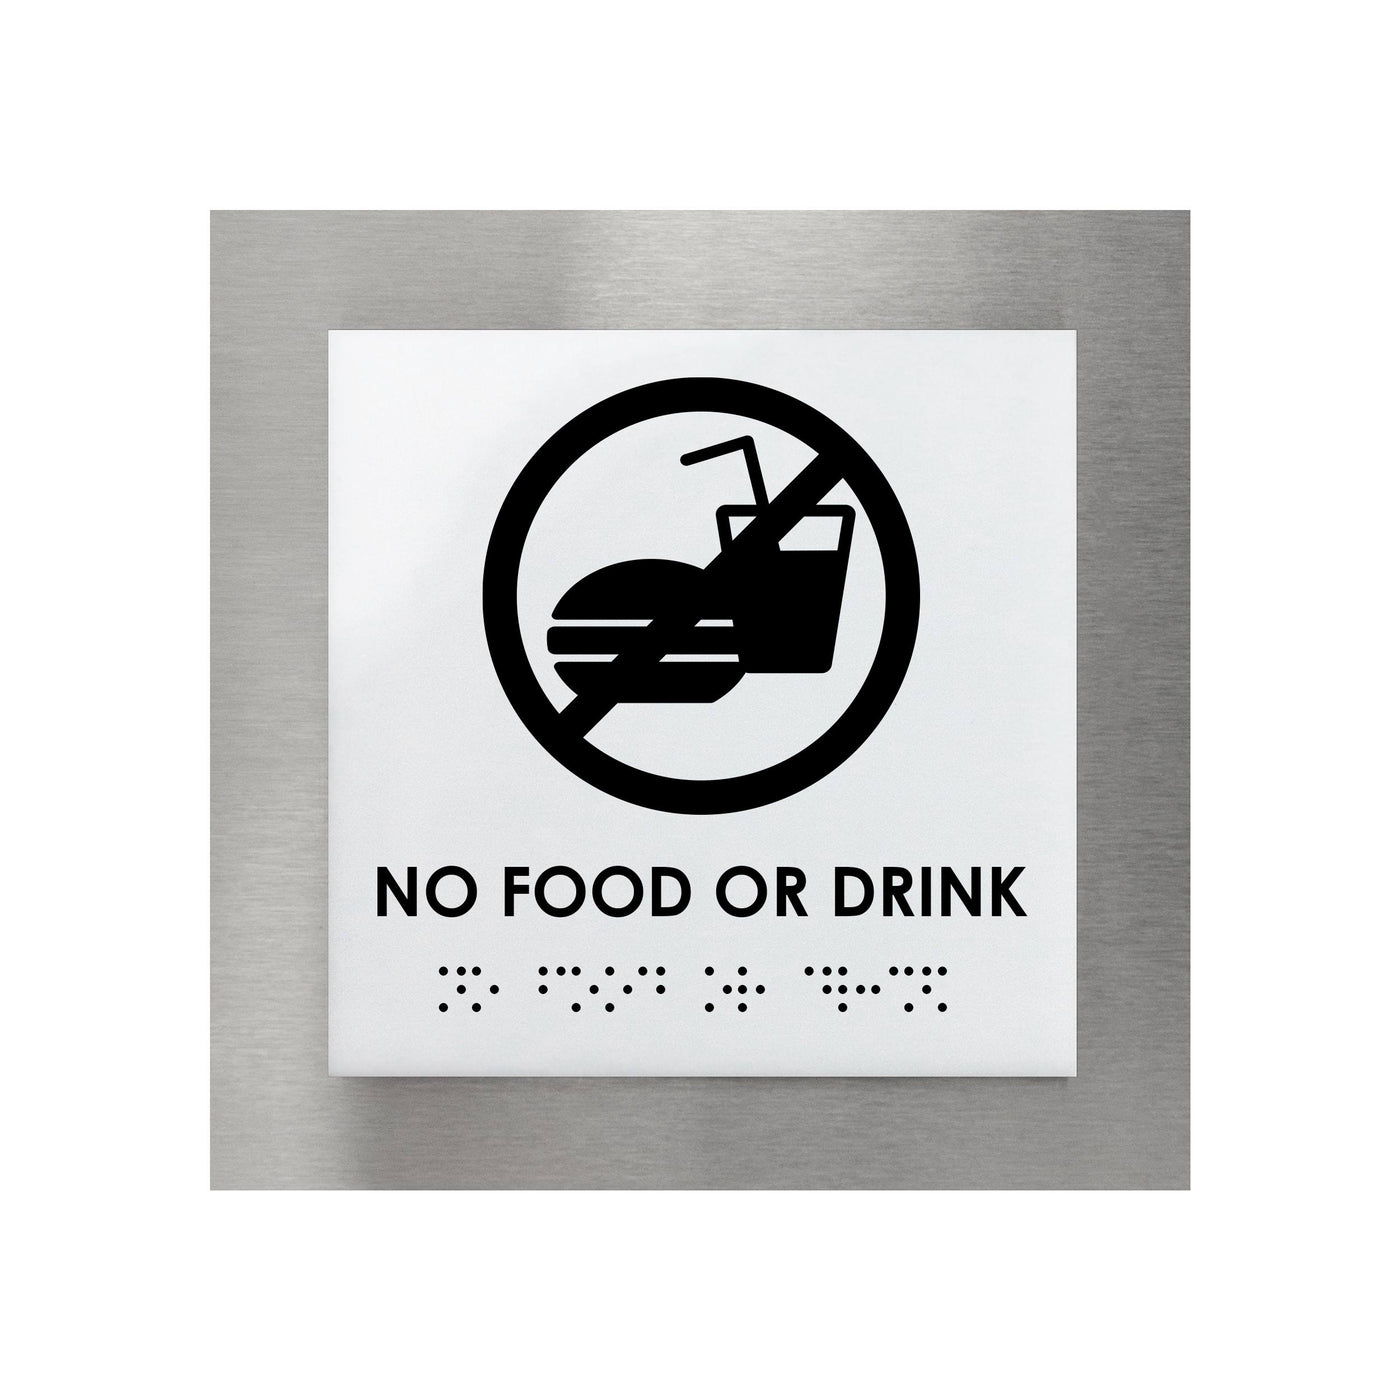 Information Signs - No Food Or Drink Sign Steel "Modern" Design